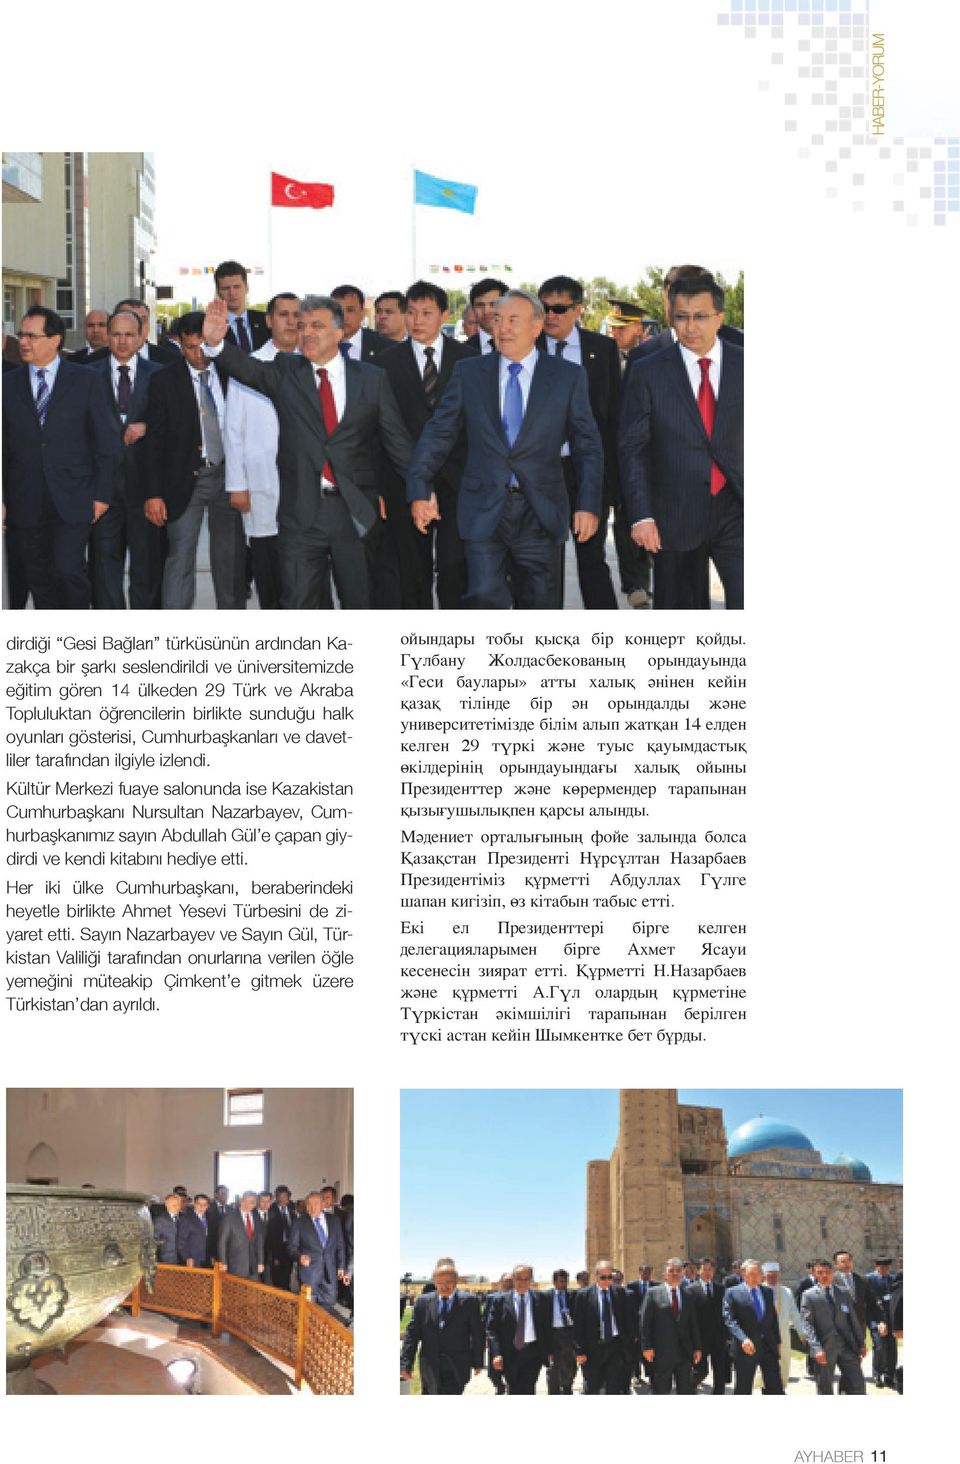 Kültür Merkezi fuaye salonunda ise Kazakistan Cumhurbaşkanı Nursultan Nazarbayev, Cumhurbaşkanımız sayın Abdullah Gül e çapan giydirdi ve kendi kitabını hediye etti.